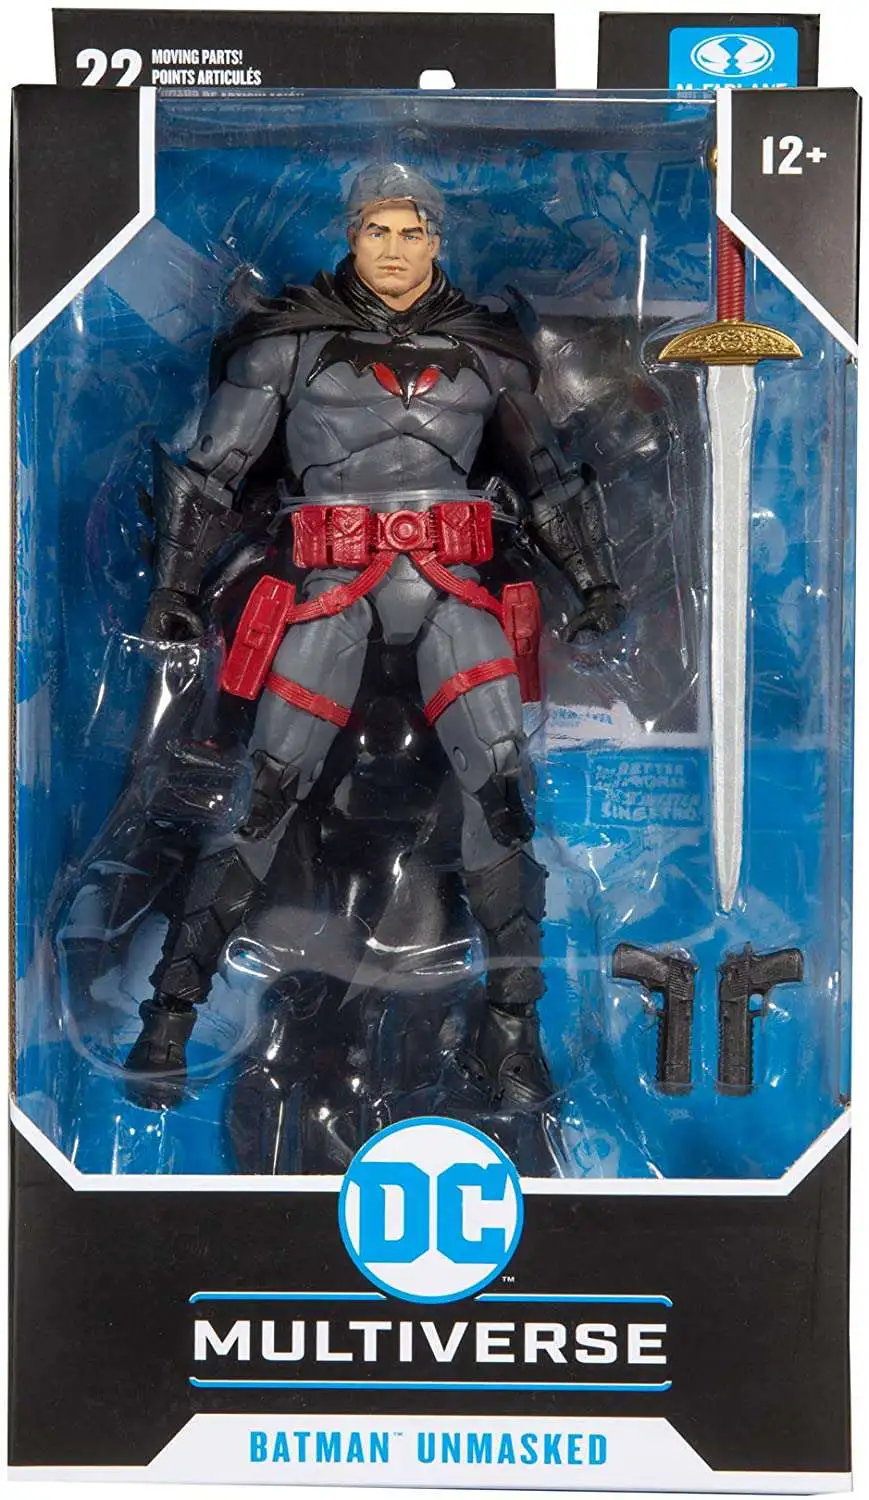 McFarlane Toys DC Multiverse Thomas Wayne Flashpoint Batman Action Figure 15018 for sale online 